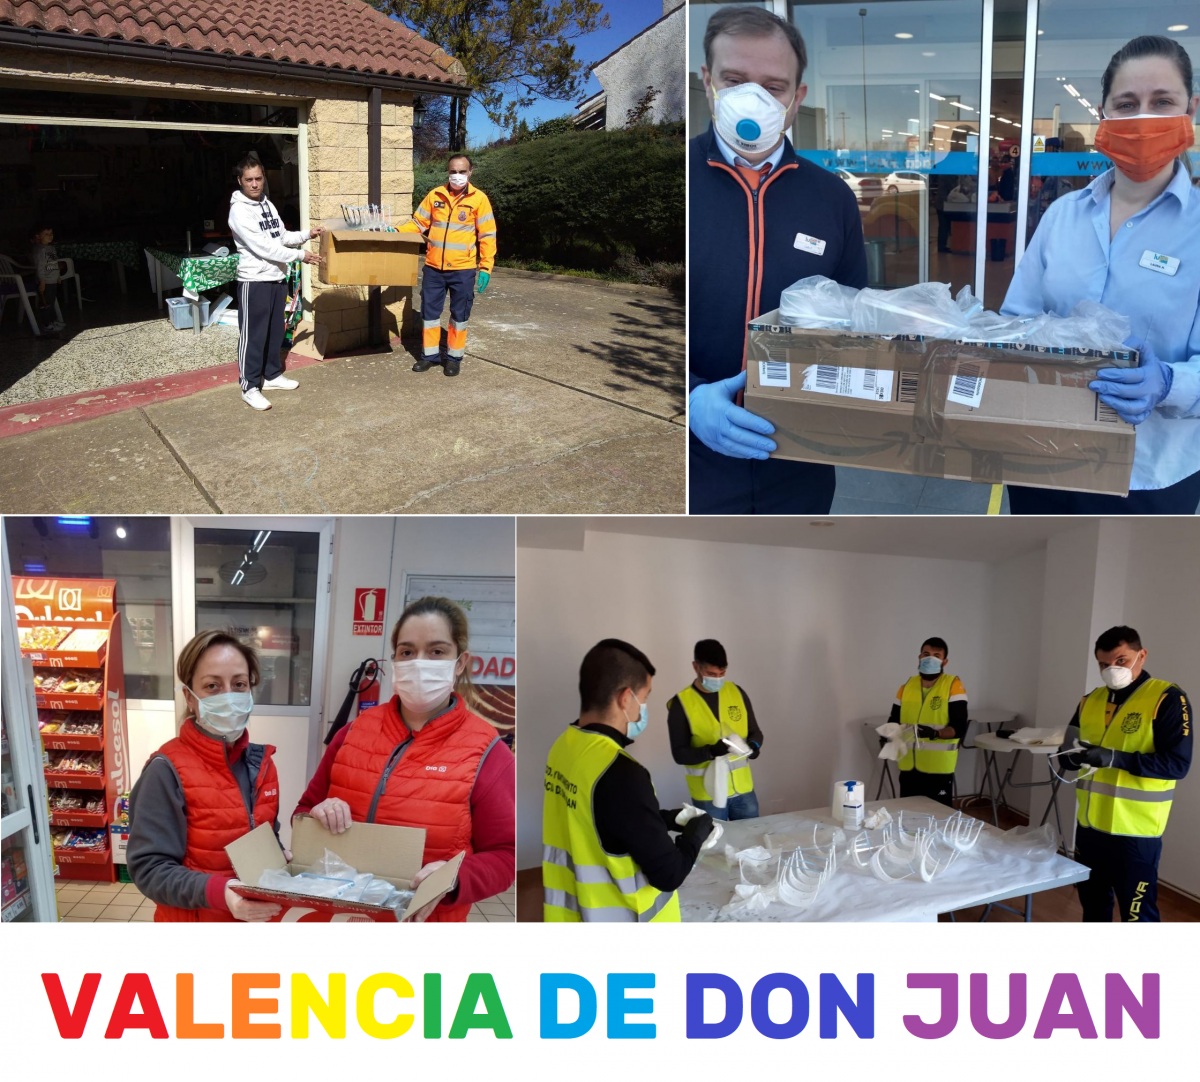 Voluntariado-Valencia-De-Don-Juan-Covid-19-Collage